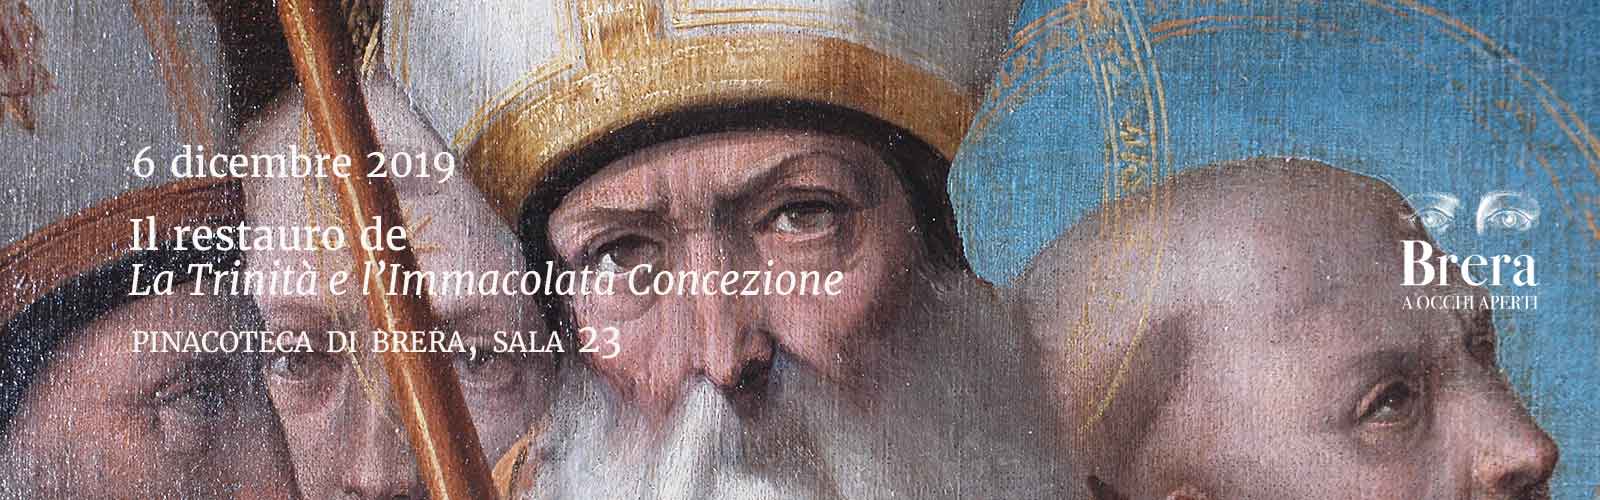 Il restauro de <em>La Trinità e l’Immacolata Concezione</em>